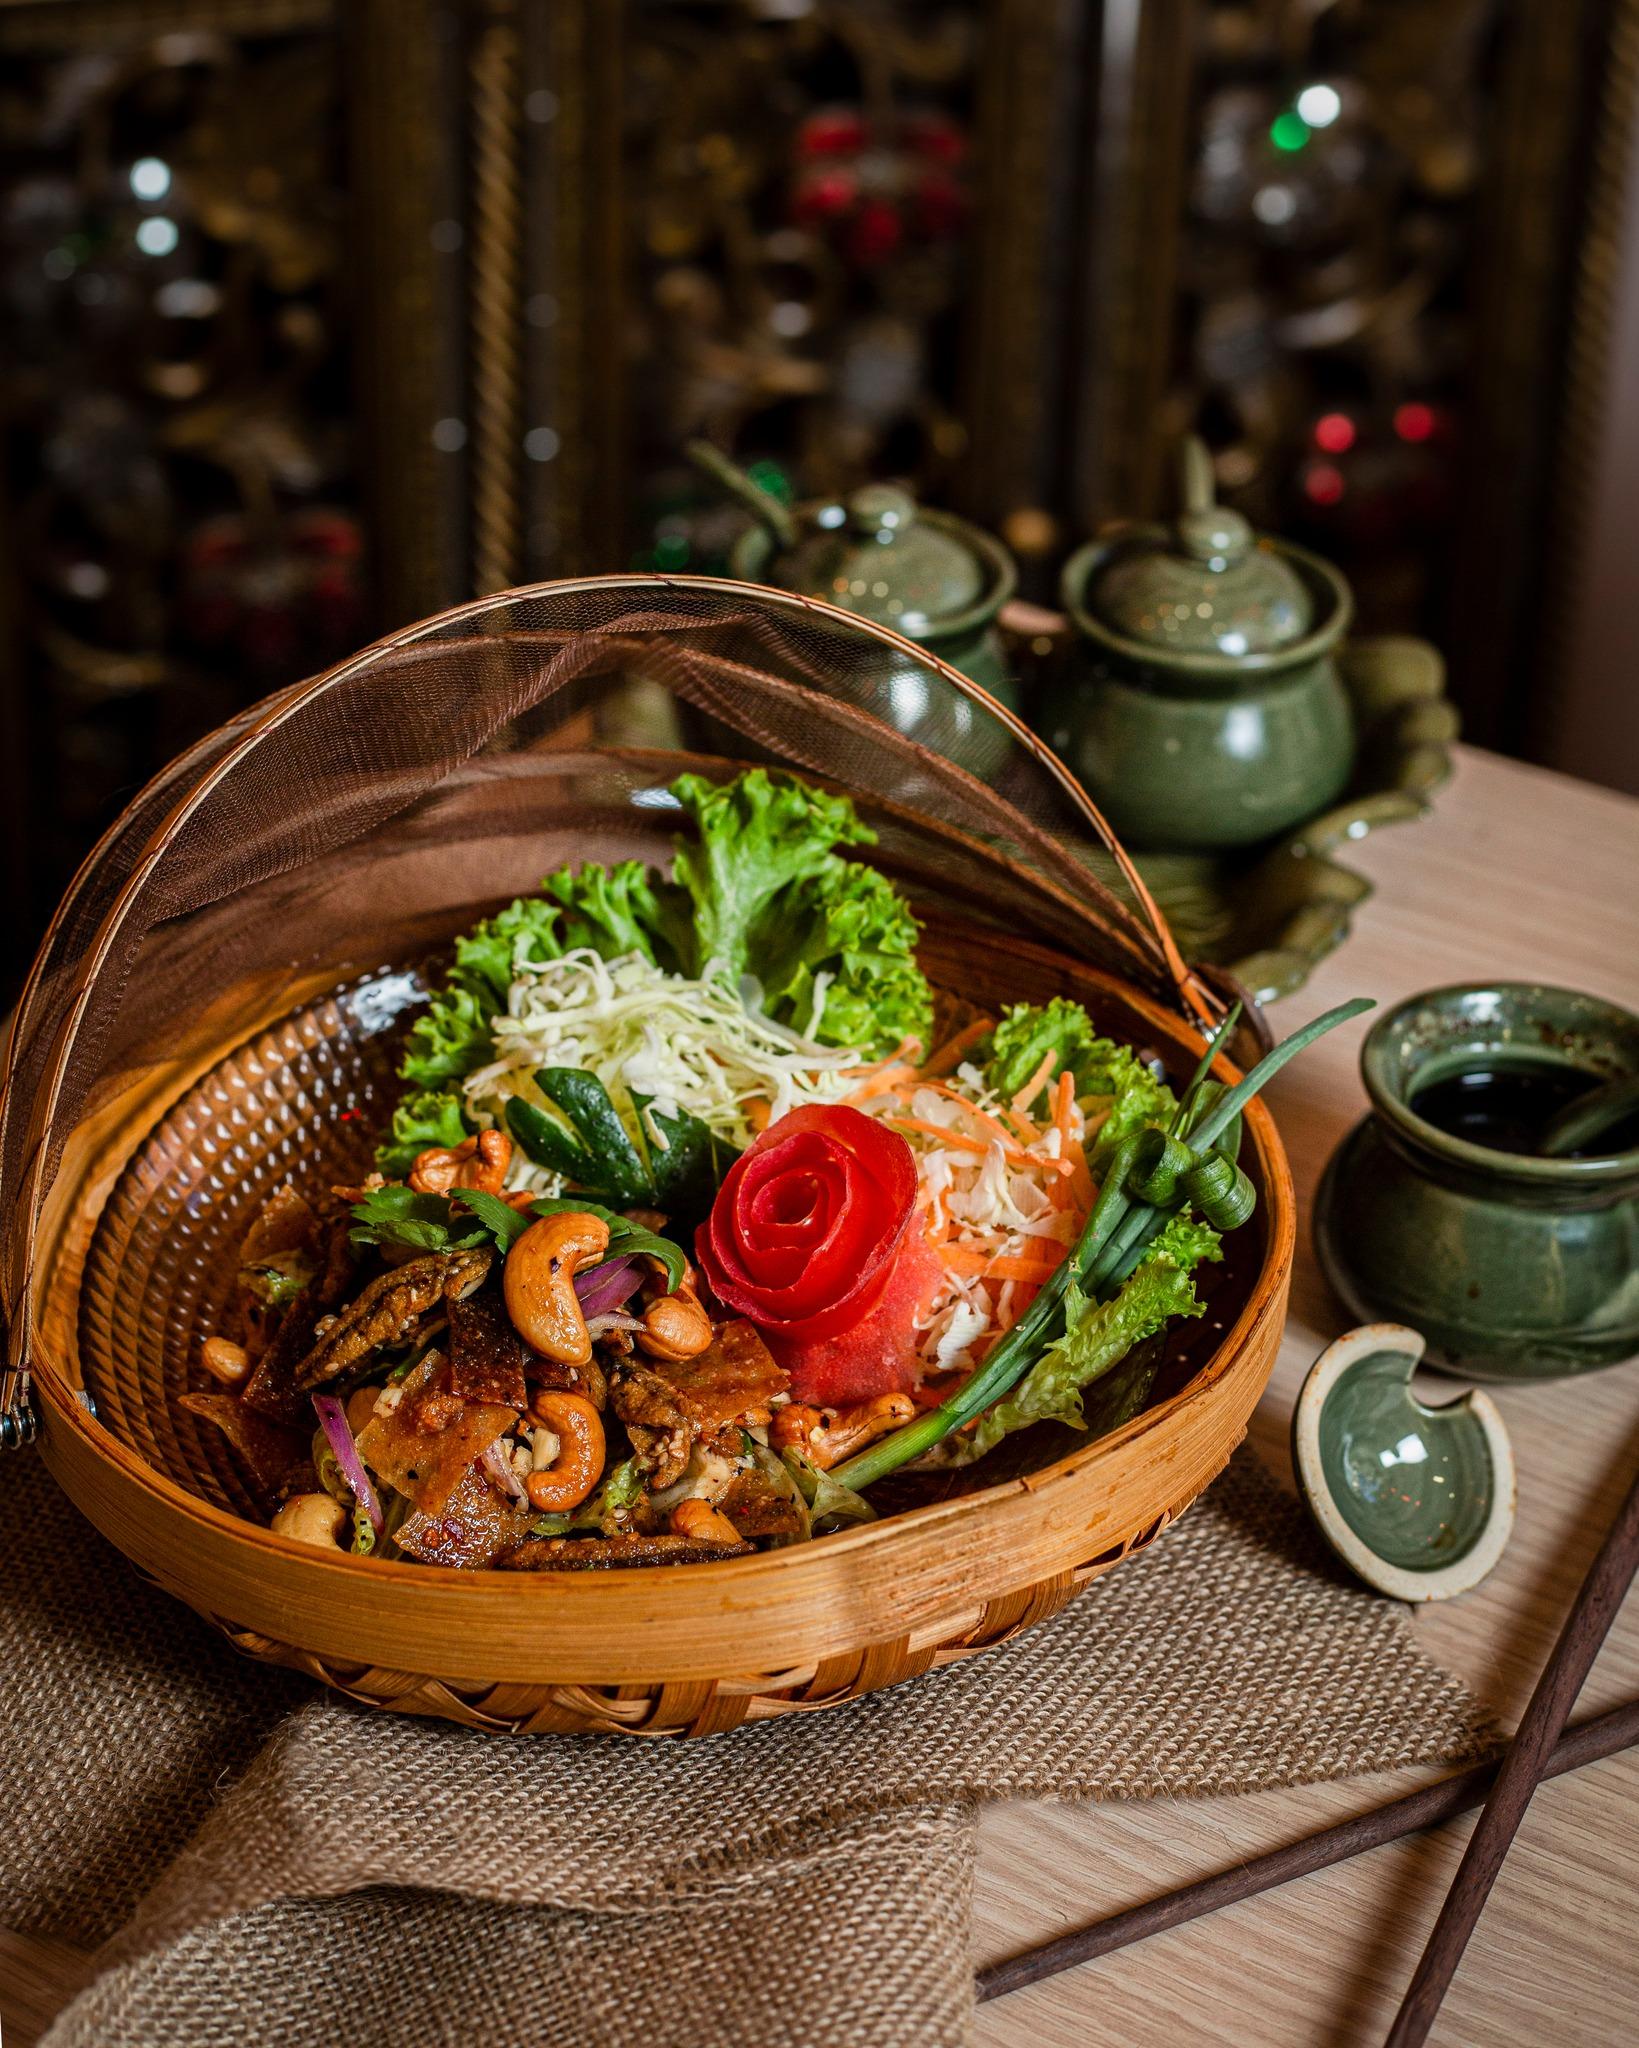 spring-rolls-thailand-restaurant-yerevan